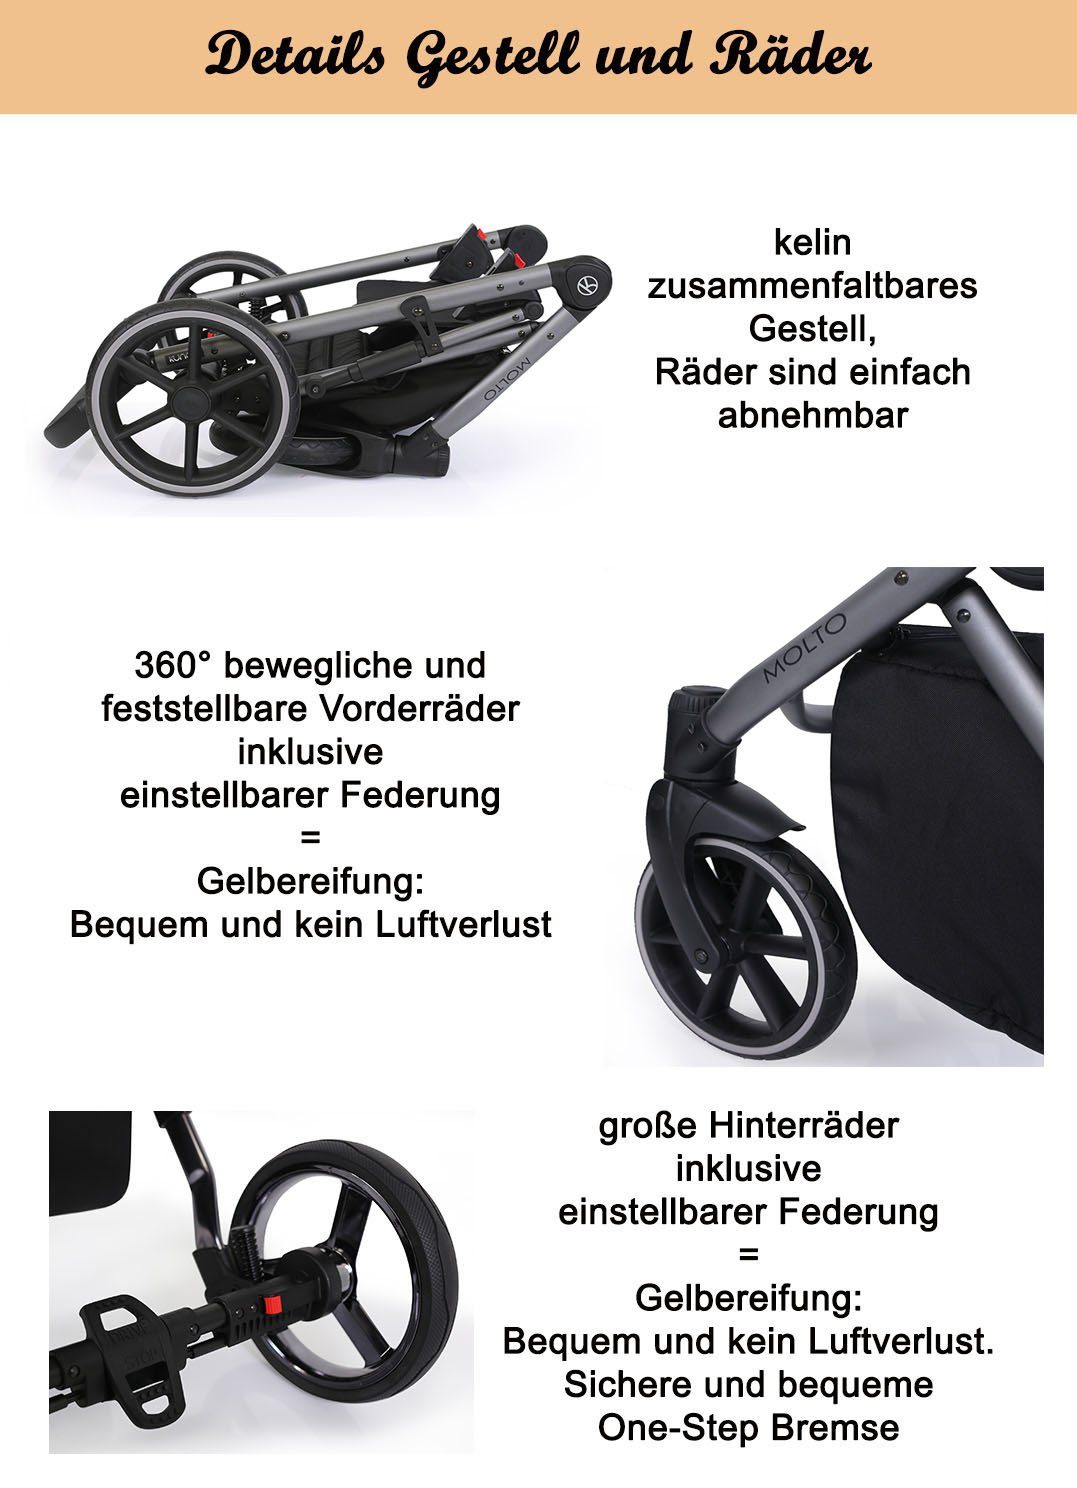 Designs Molto in schwarzes Gestell - Kombi-Kinderwagen 12 Jahre babies-on-wheels 2 = Teile in 1 bis Schwarz-Dekor von 4 - Geburt 14